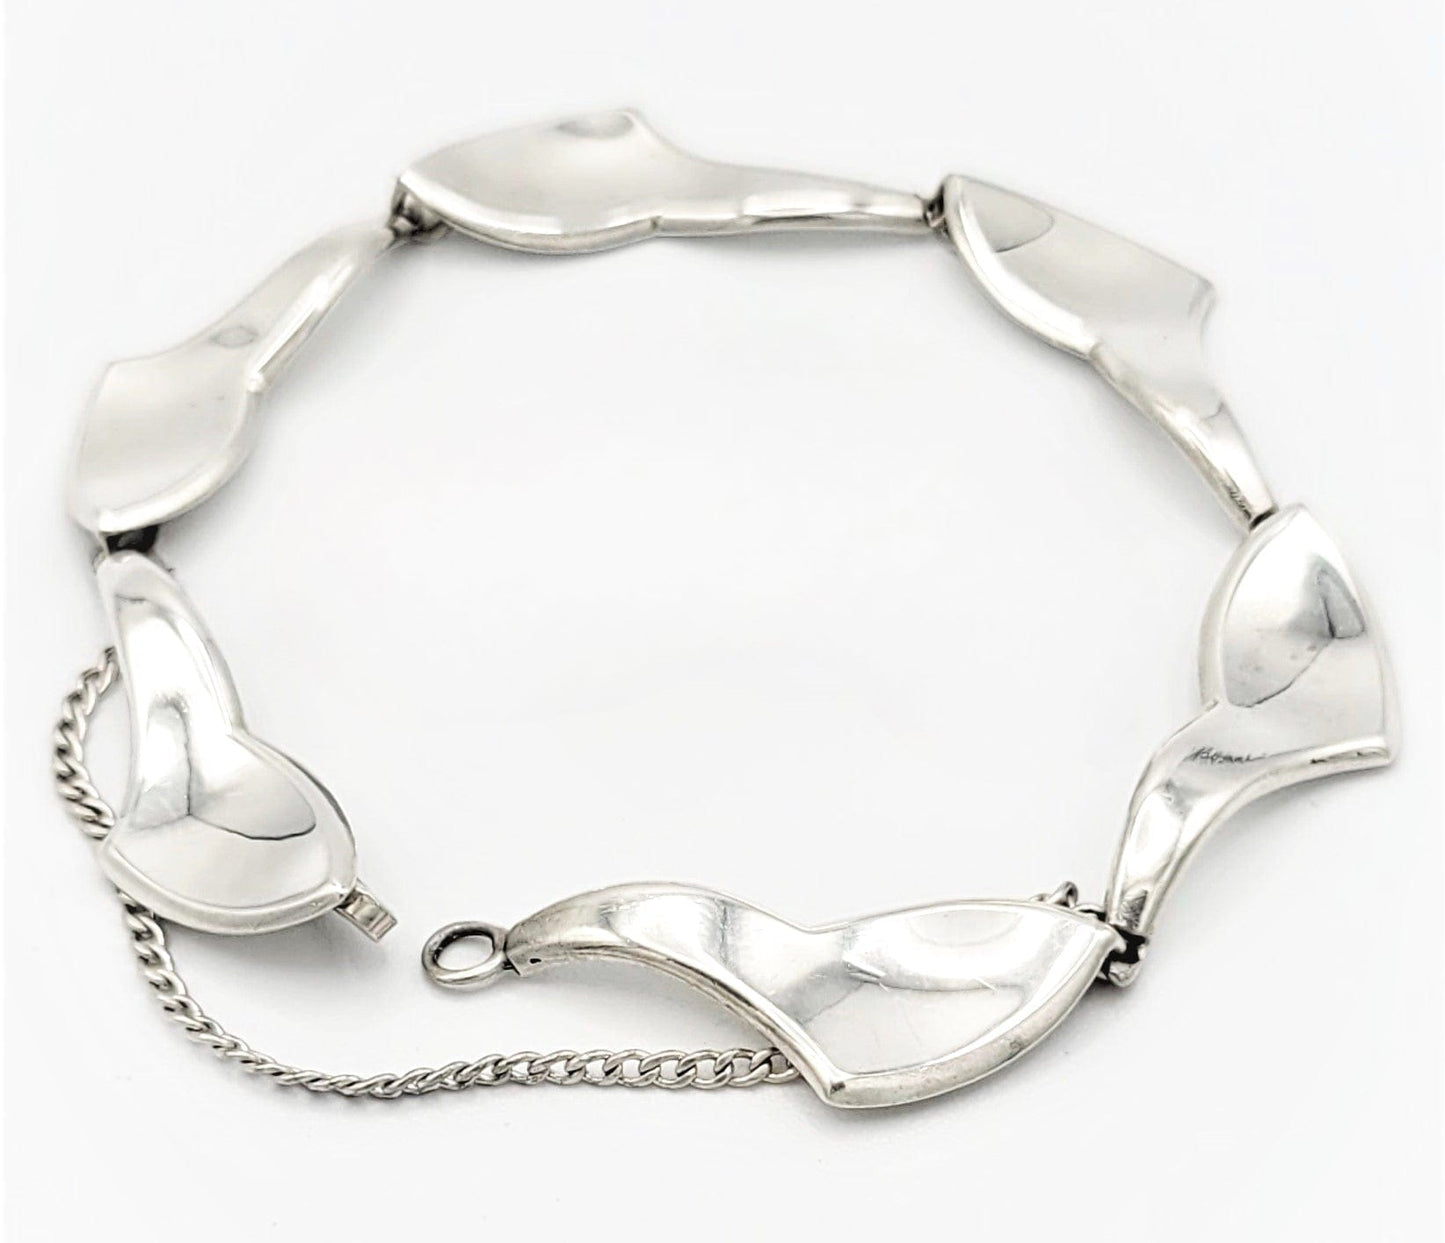 A & K Denmark Jewelry Aarre & Krogh Denmark Sterling Silver Mid Century Modernist Bracelet Circa 1960s